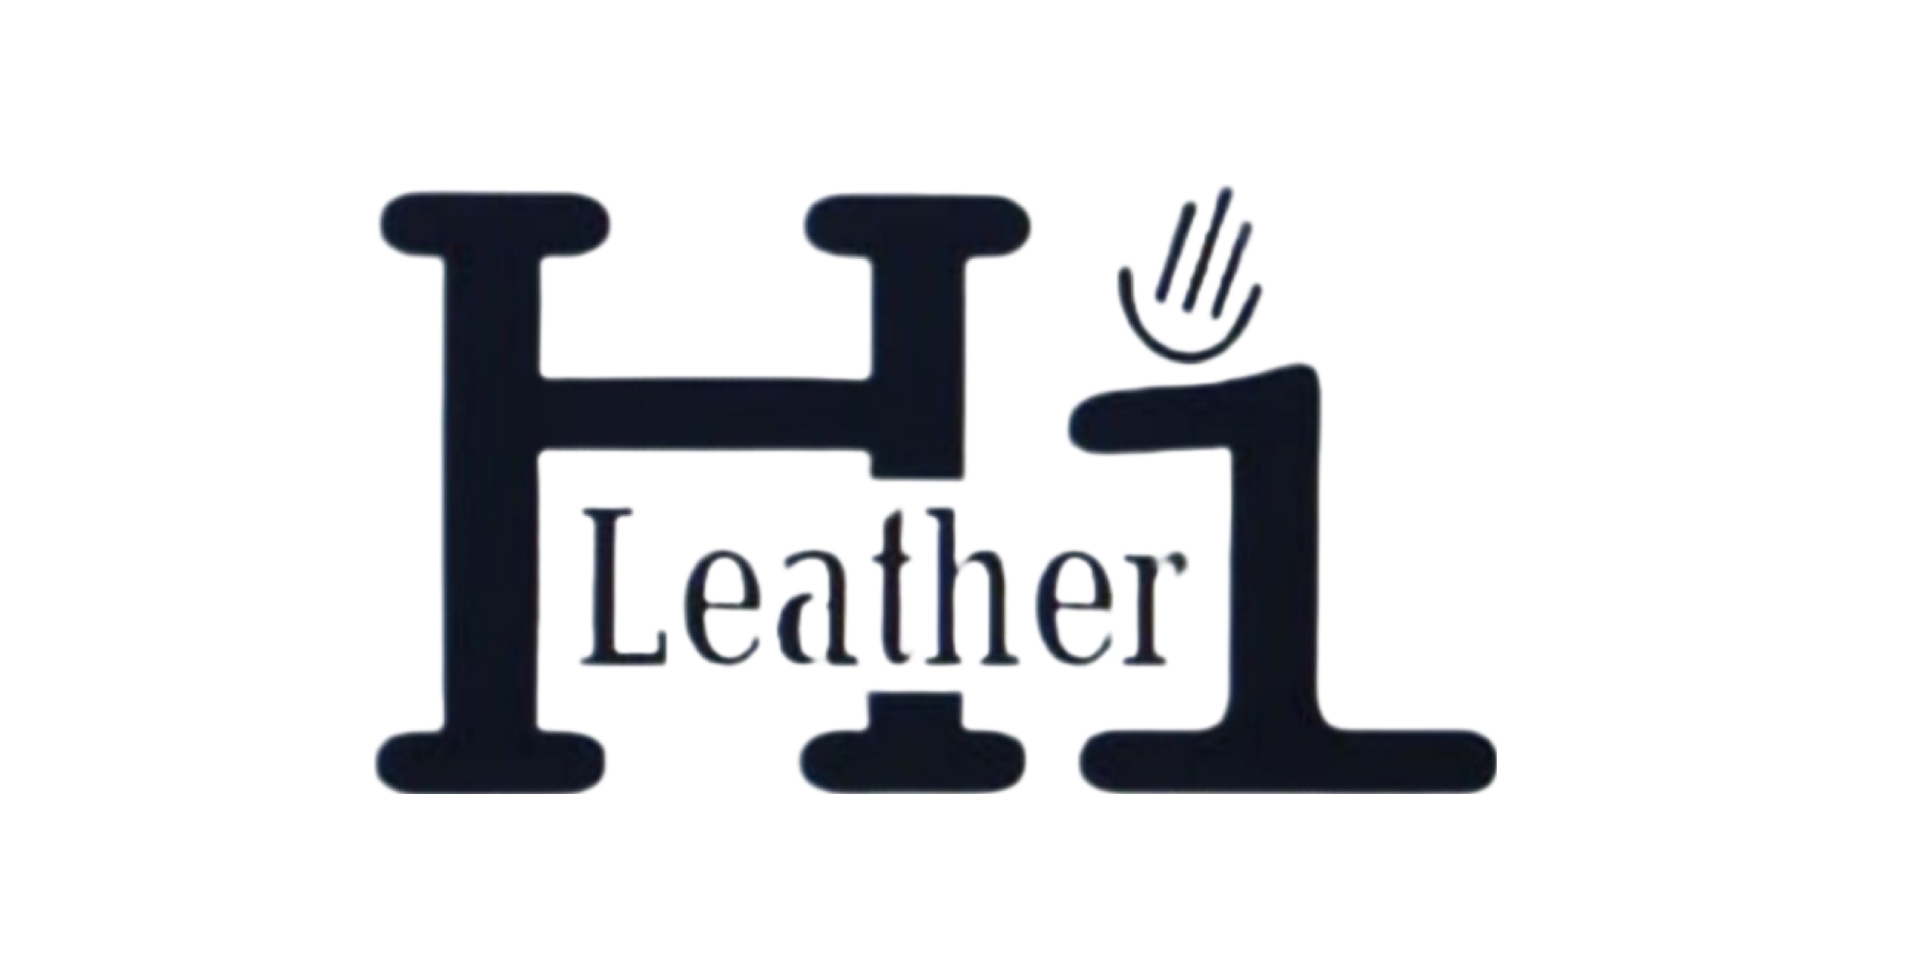 Hi Leather